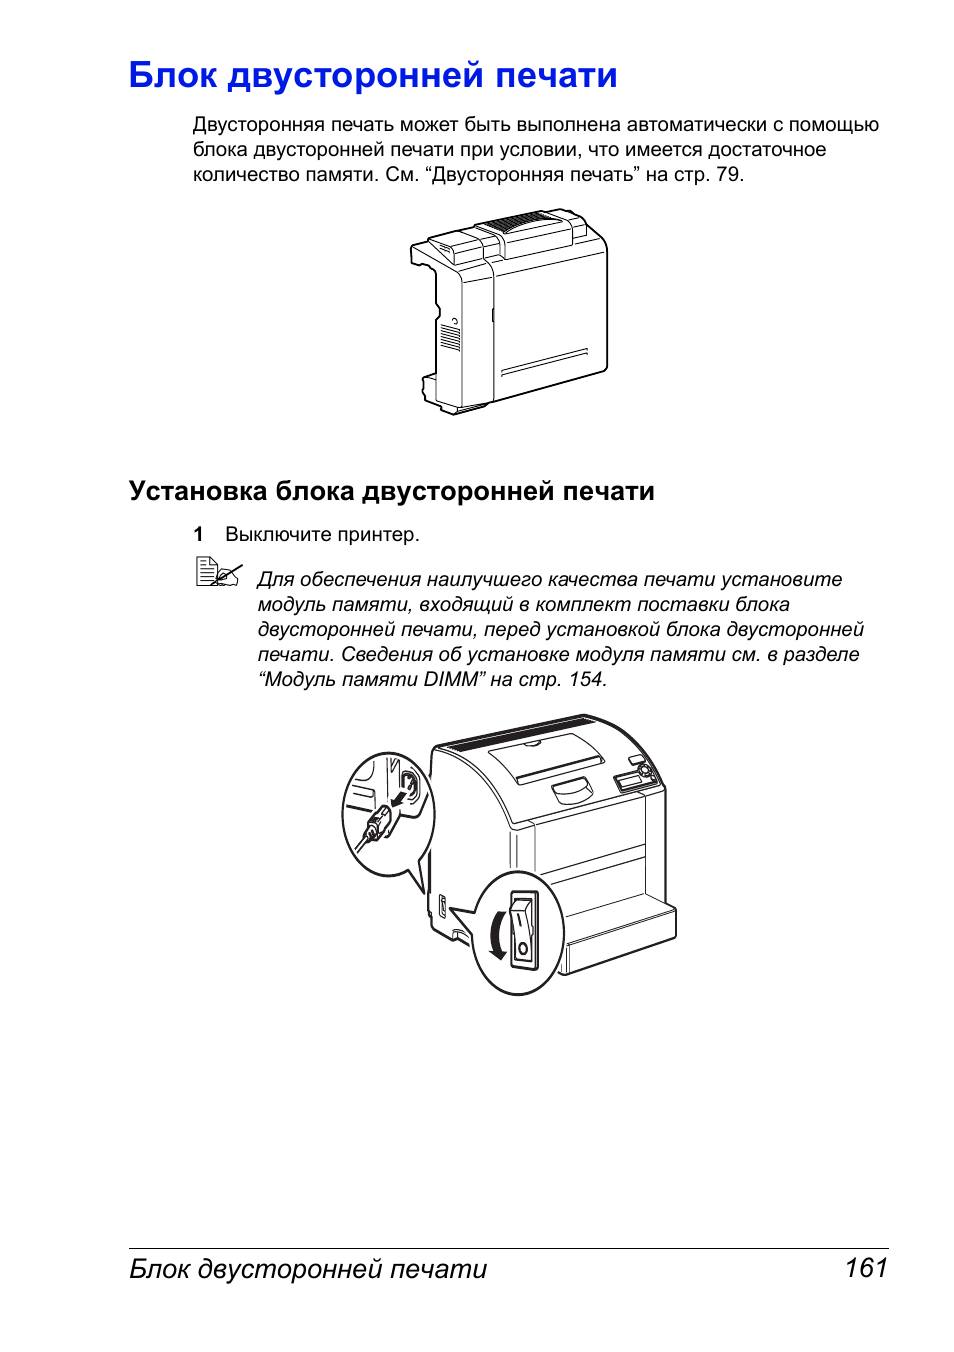 Напечатать инструкции. Принтер лазерный двусторонняя печать. Распечатать инструкцию по бытовой технике.